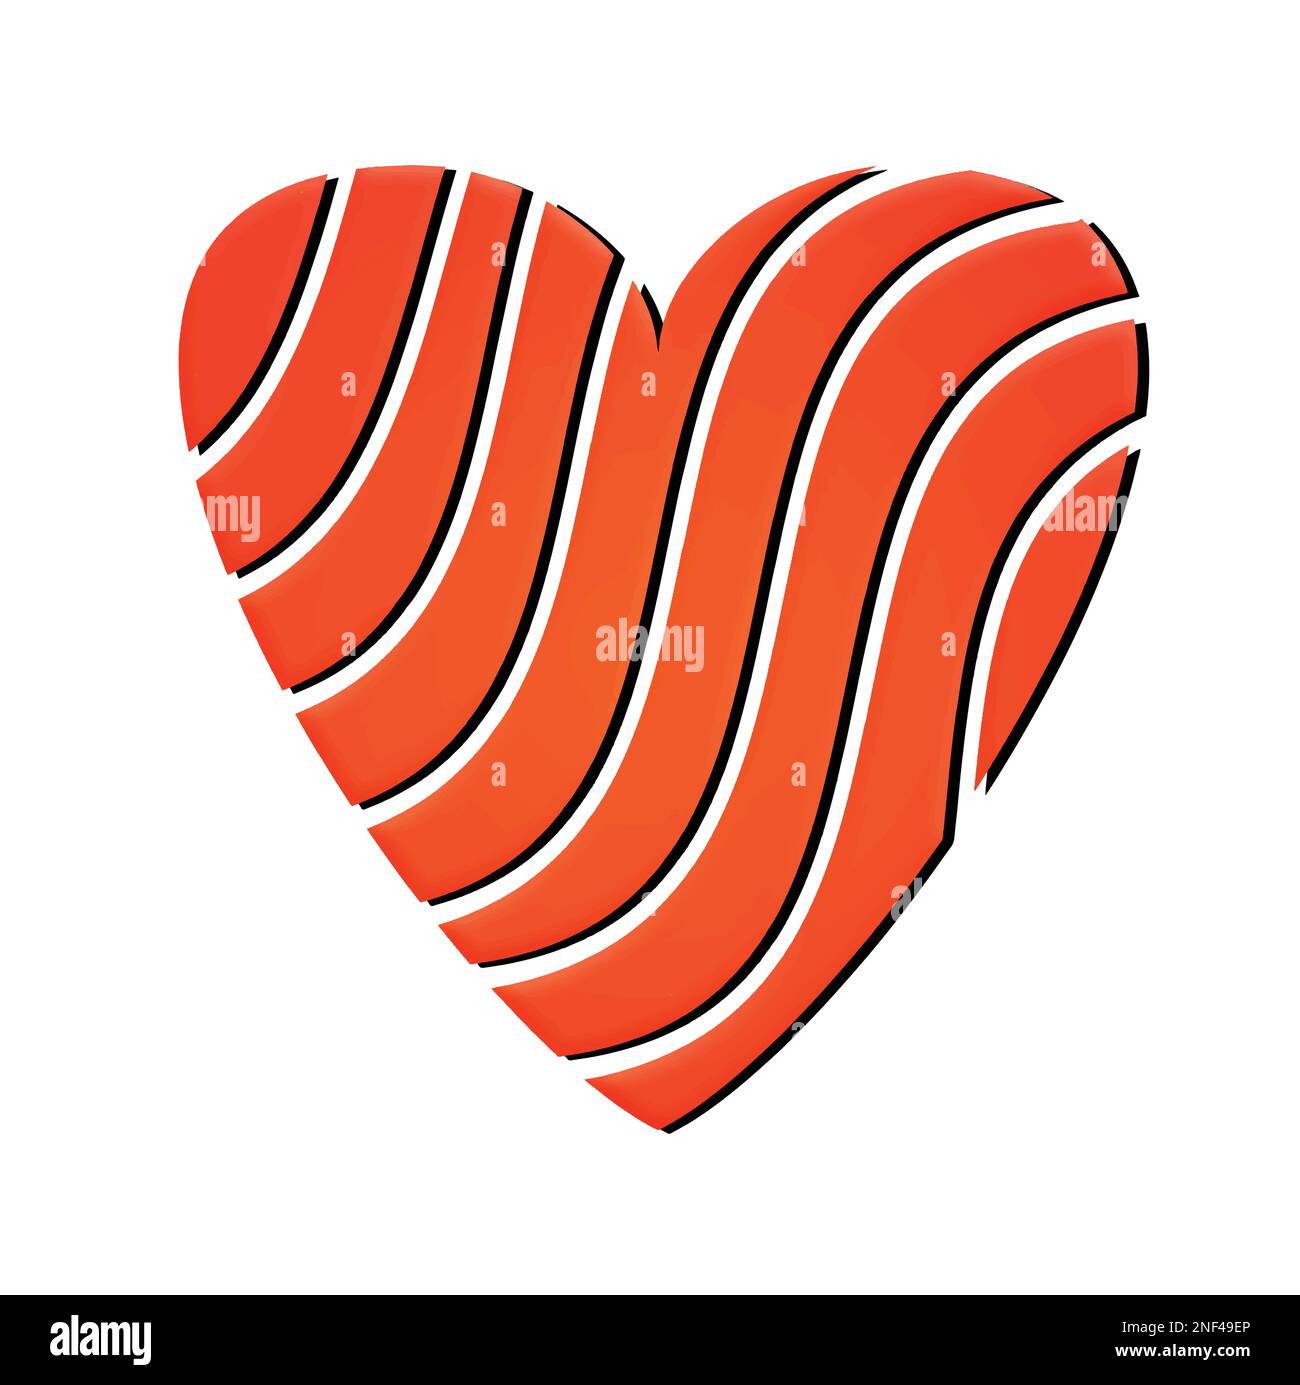 Eine Vektordarstellung schöne gebrochene Herzform isoliert auf weißem Hintergrund. Stilisierte und schöne Form von rotem Herz. Elegantes Liebeszeichen. Stock Vektor